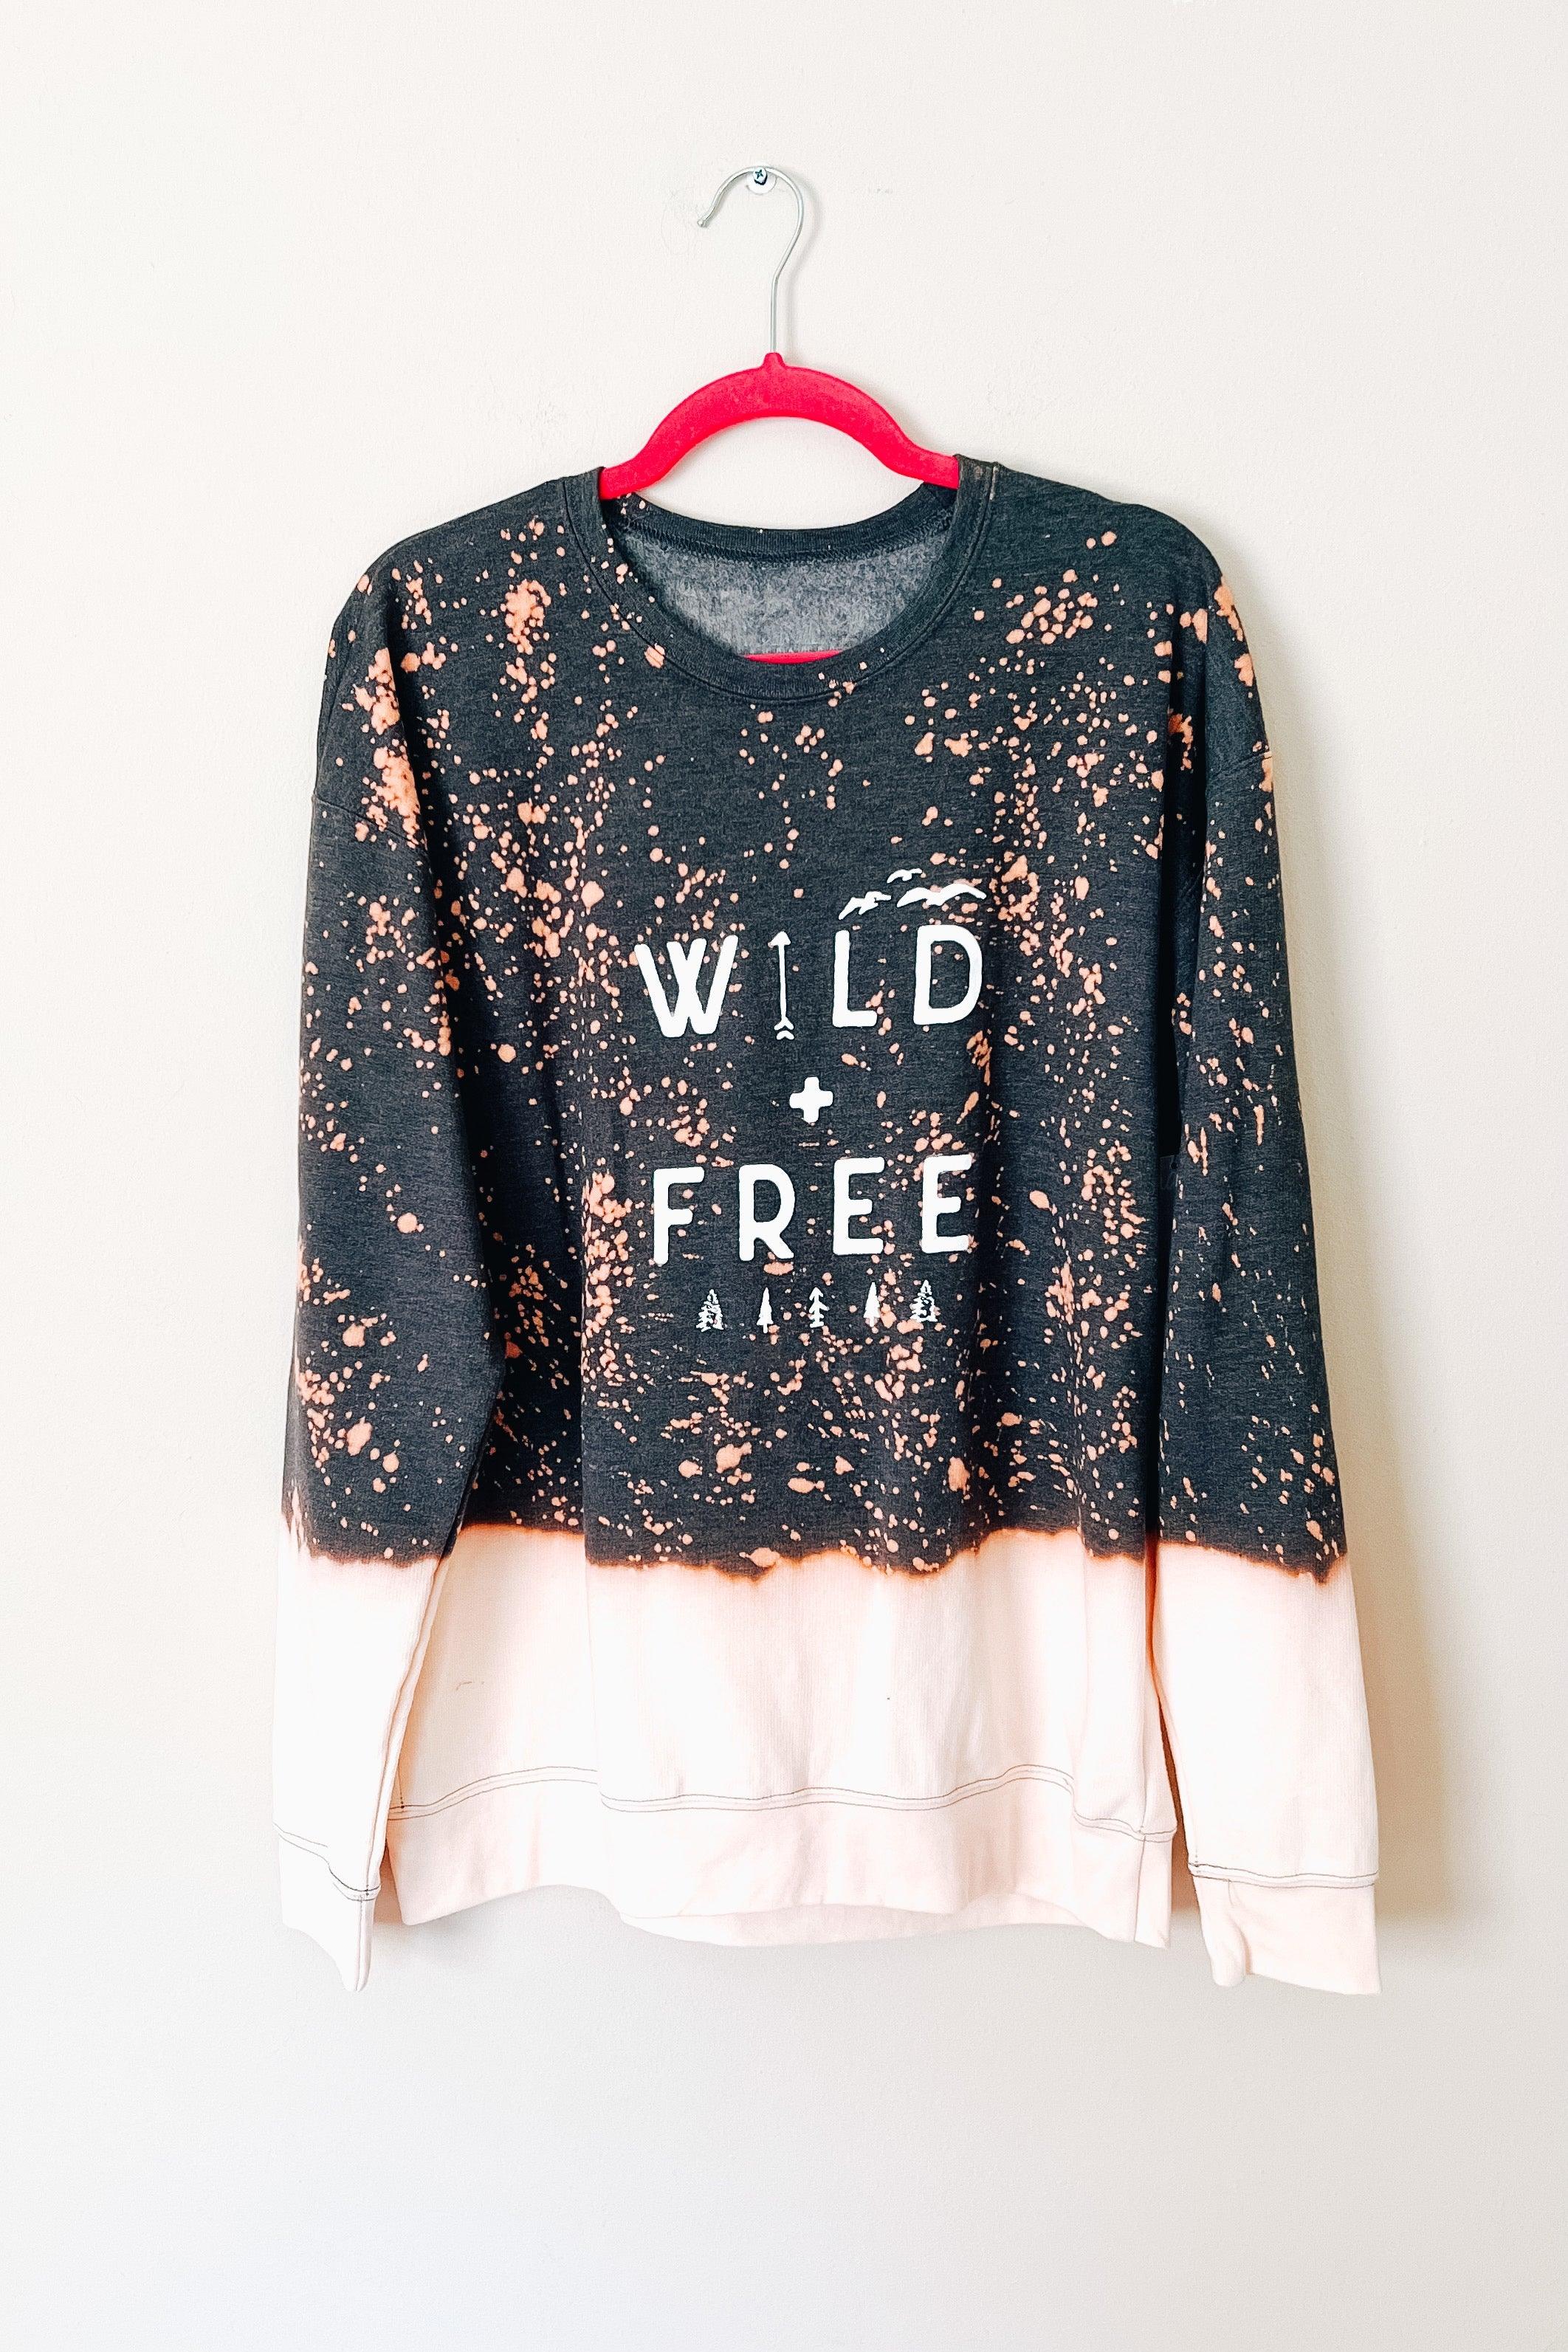 Wild & Free Bleached Sweatshirt - Atomic Wildflower